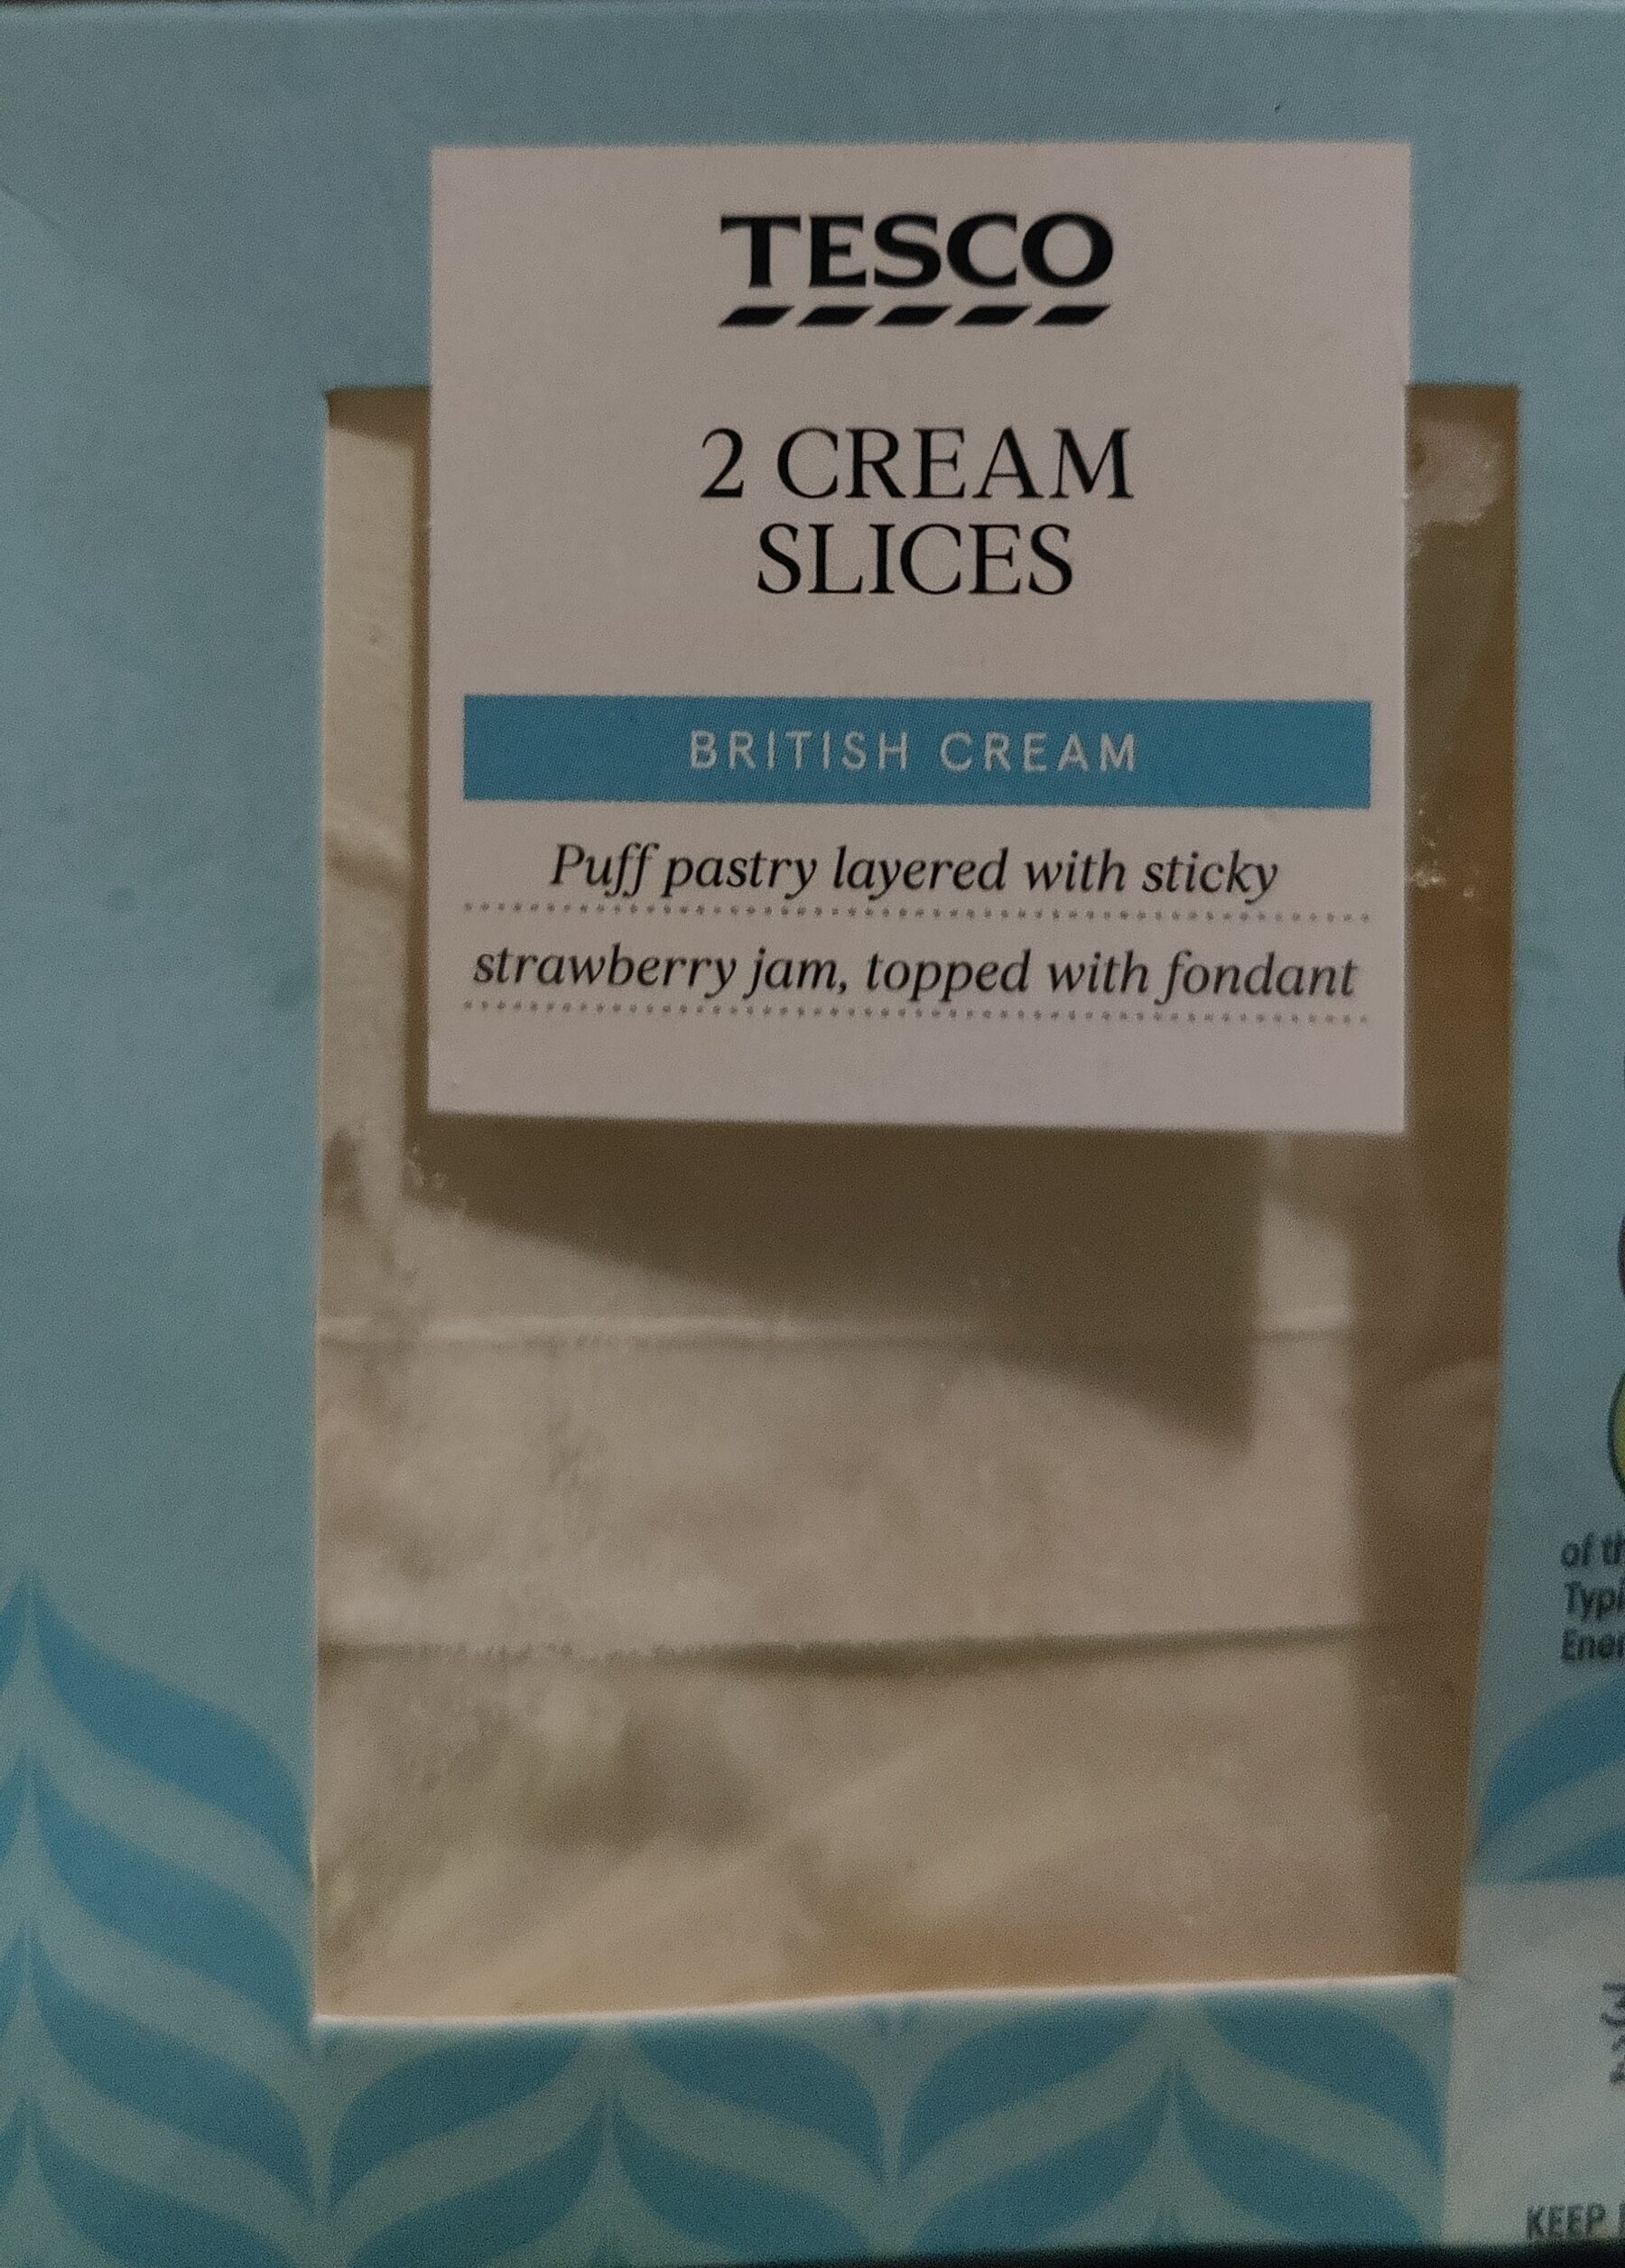 2 Cream Slices - Product